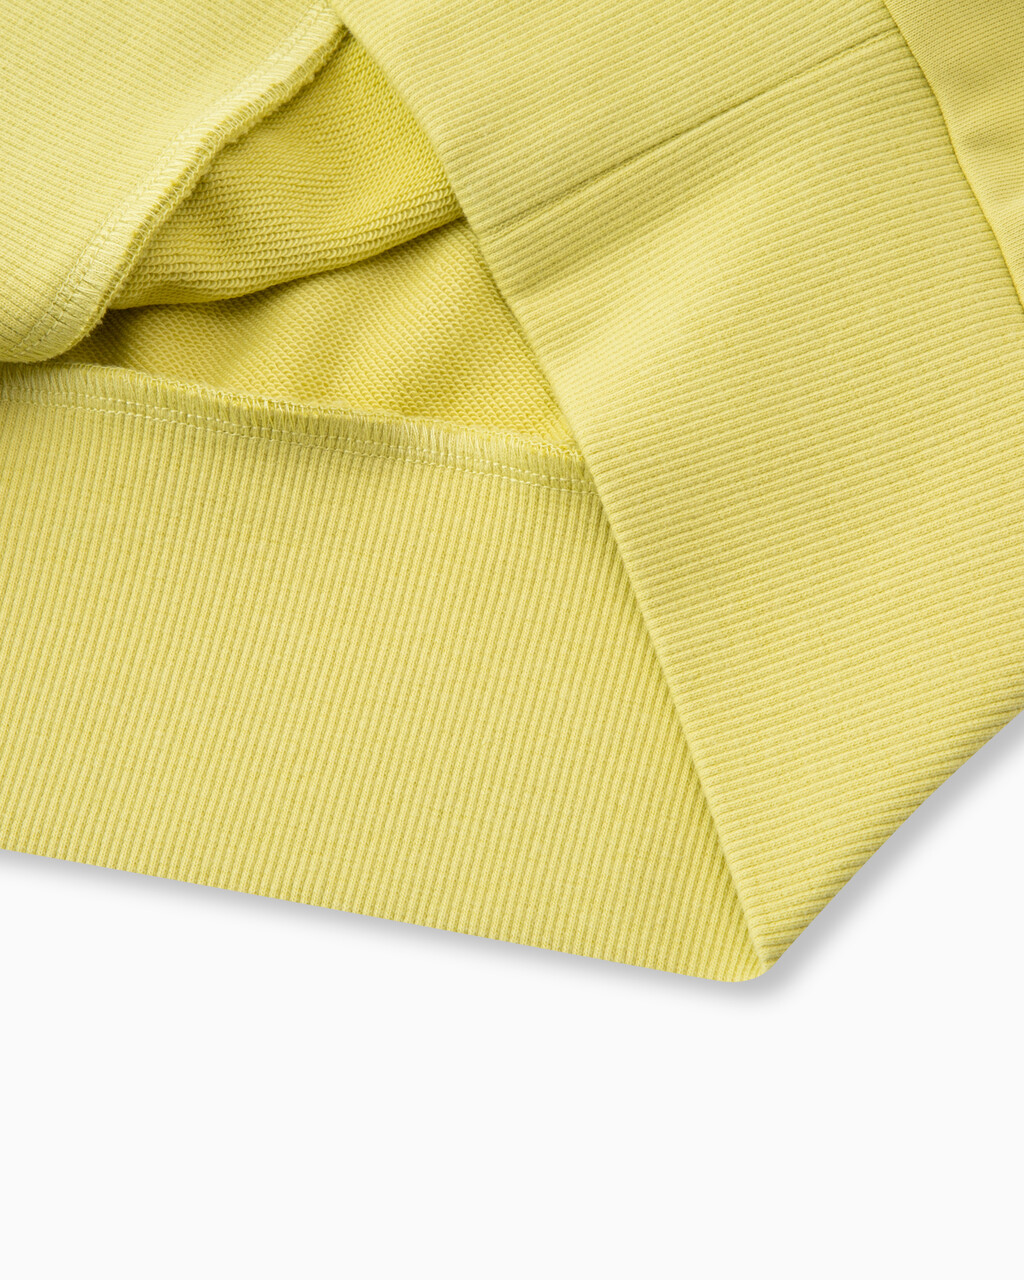 37.5 無袖 POLO 衫, Yellow Sand, hi-res